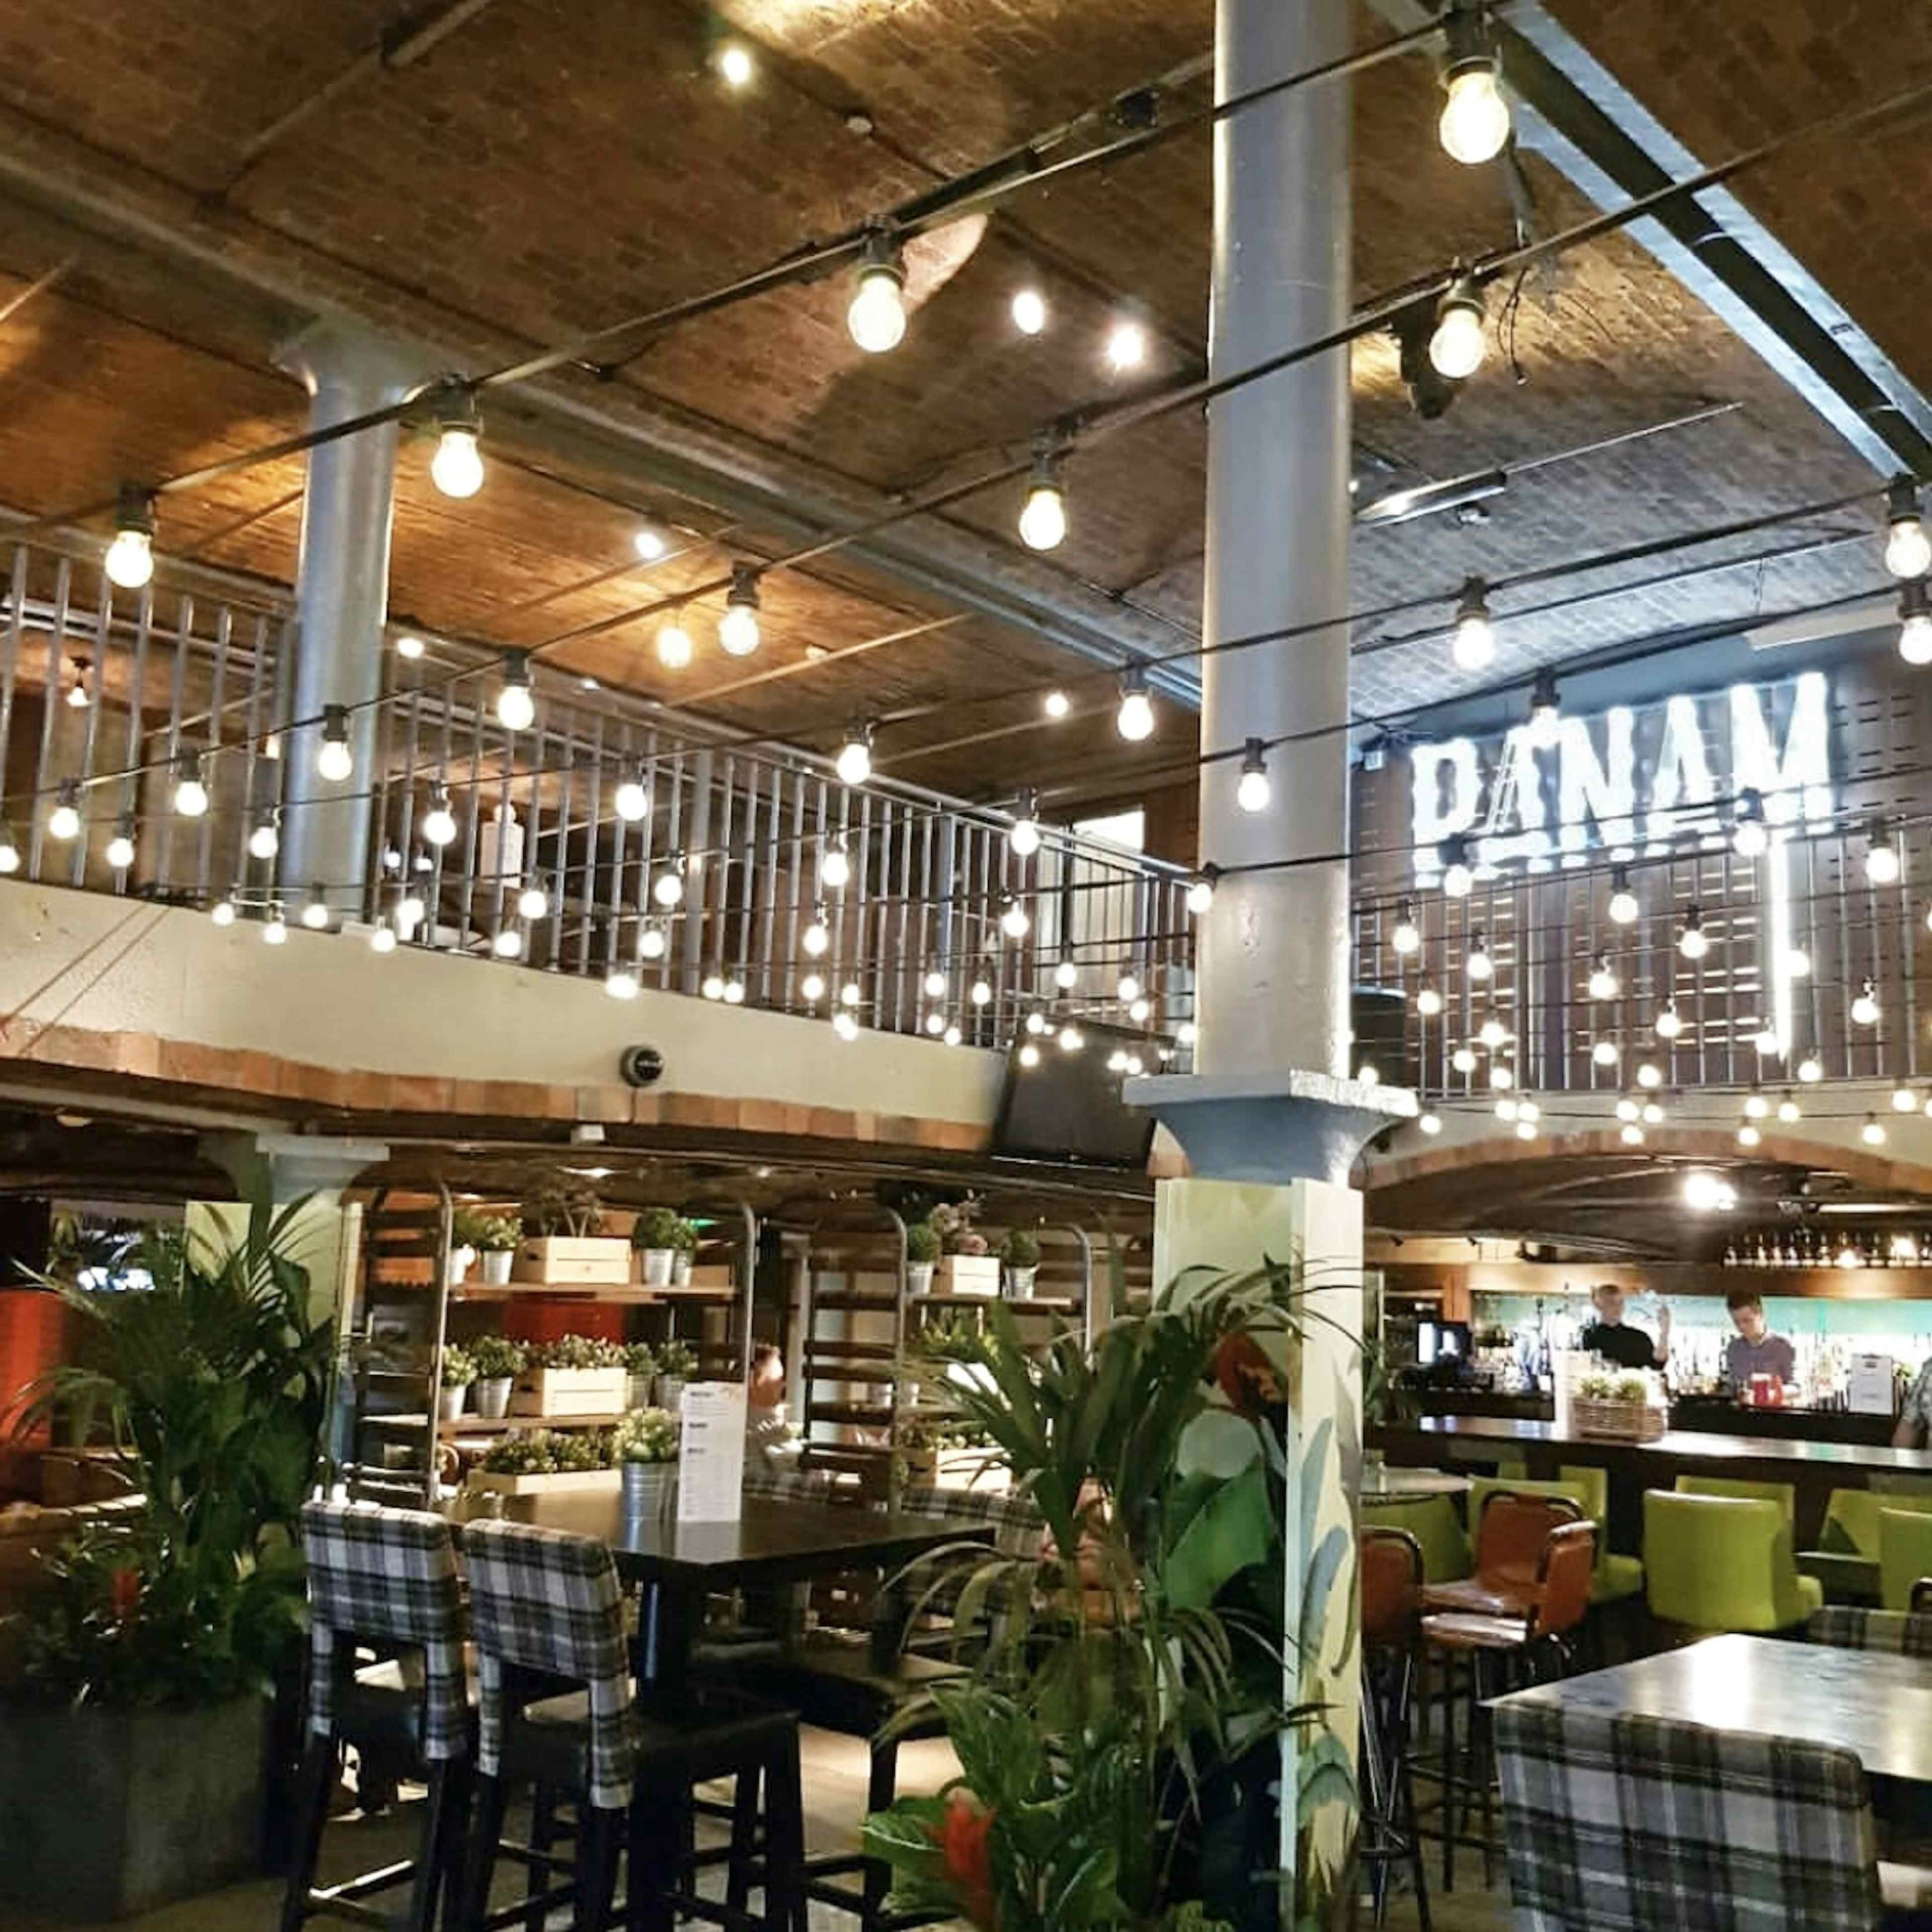 PANAM Restaurant & Bar - Whole Venue image 3